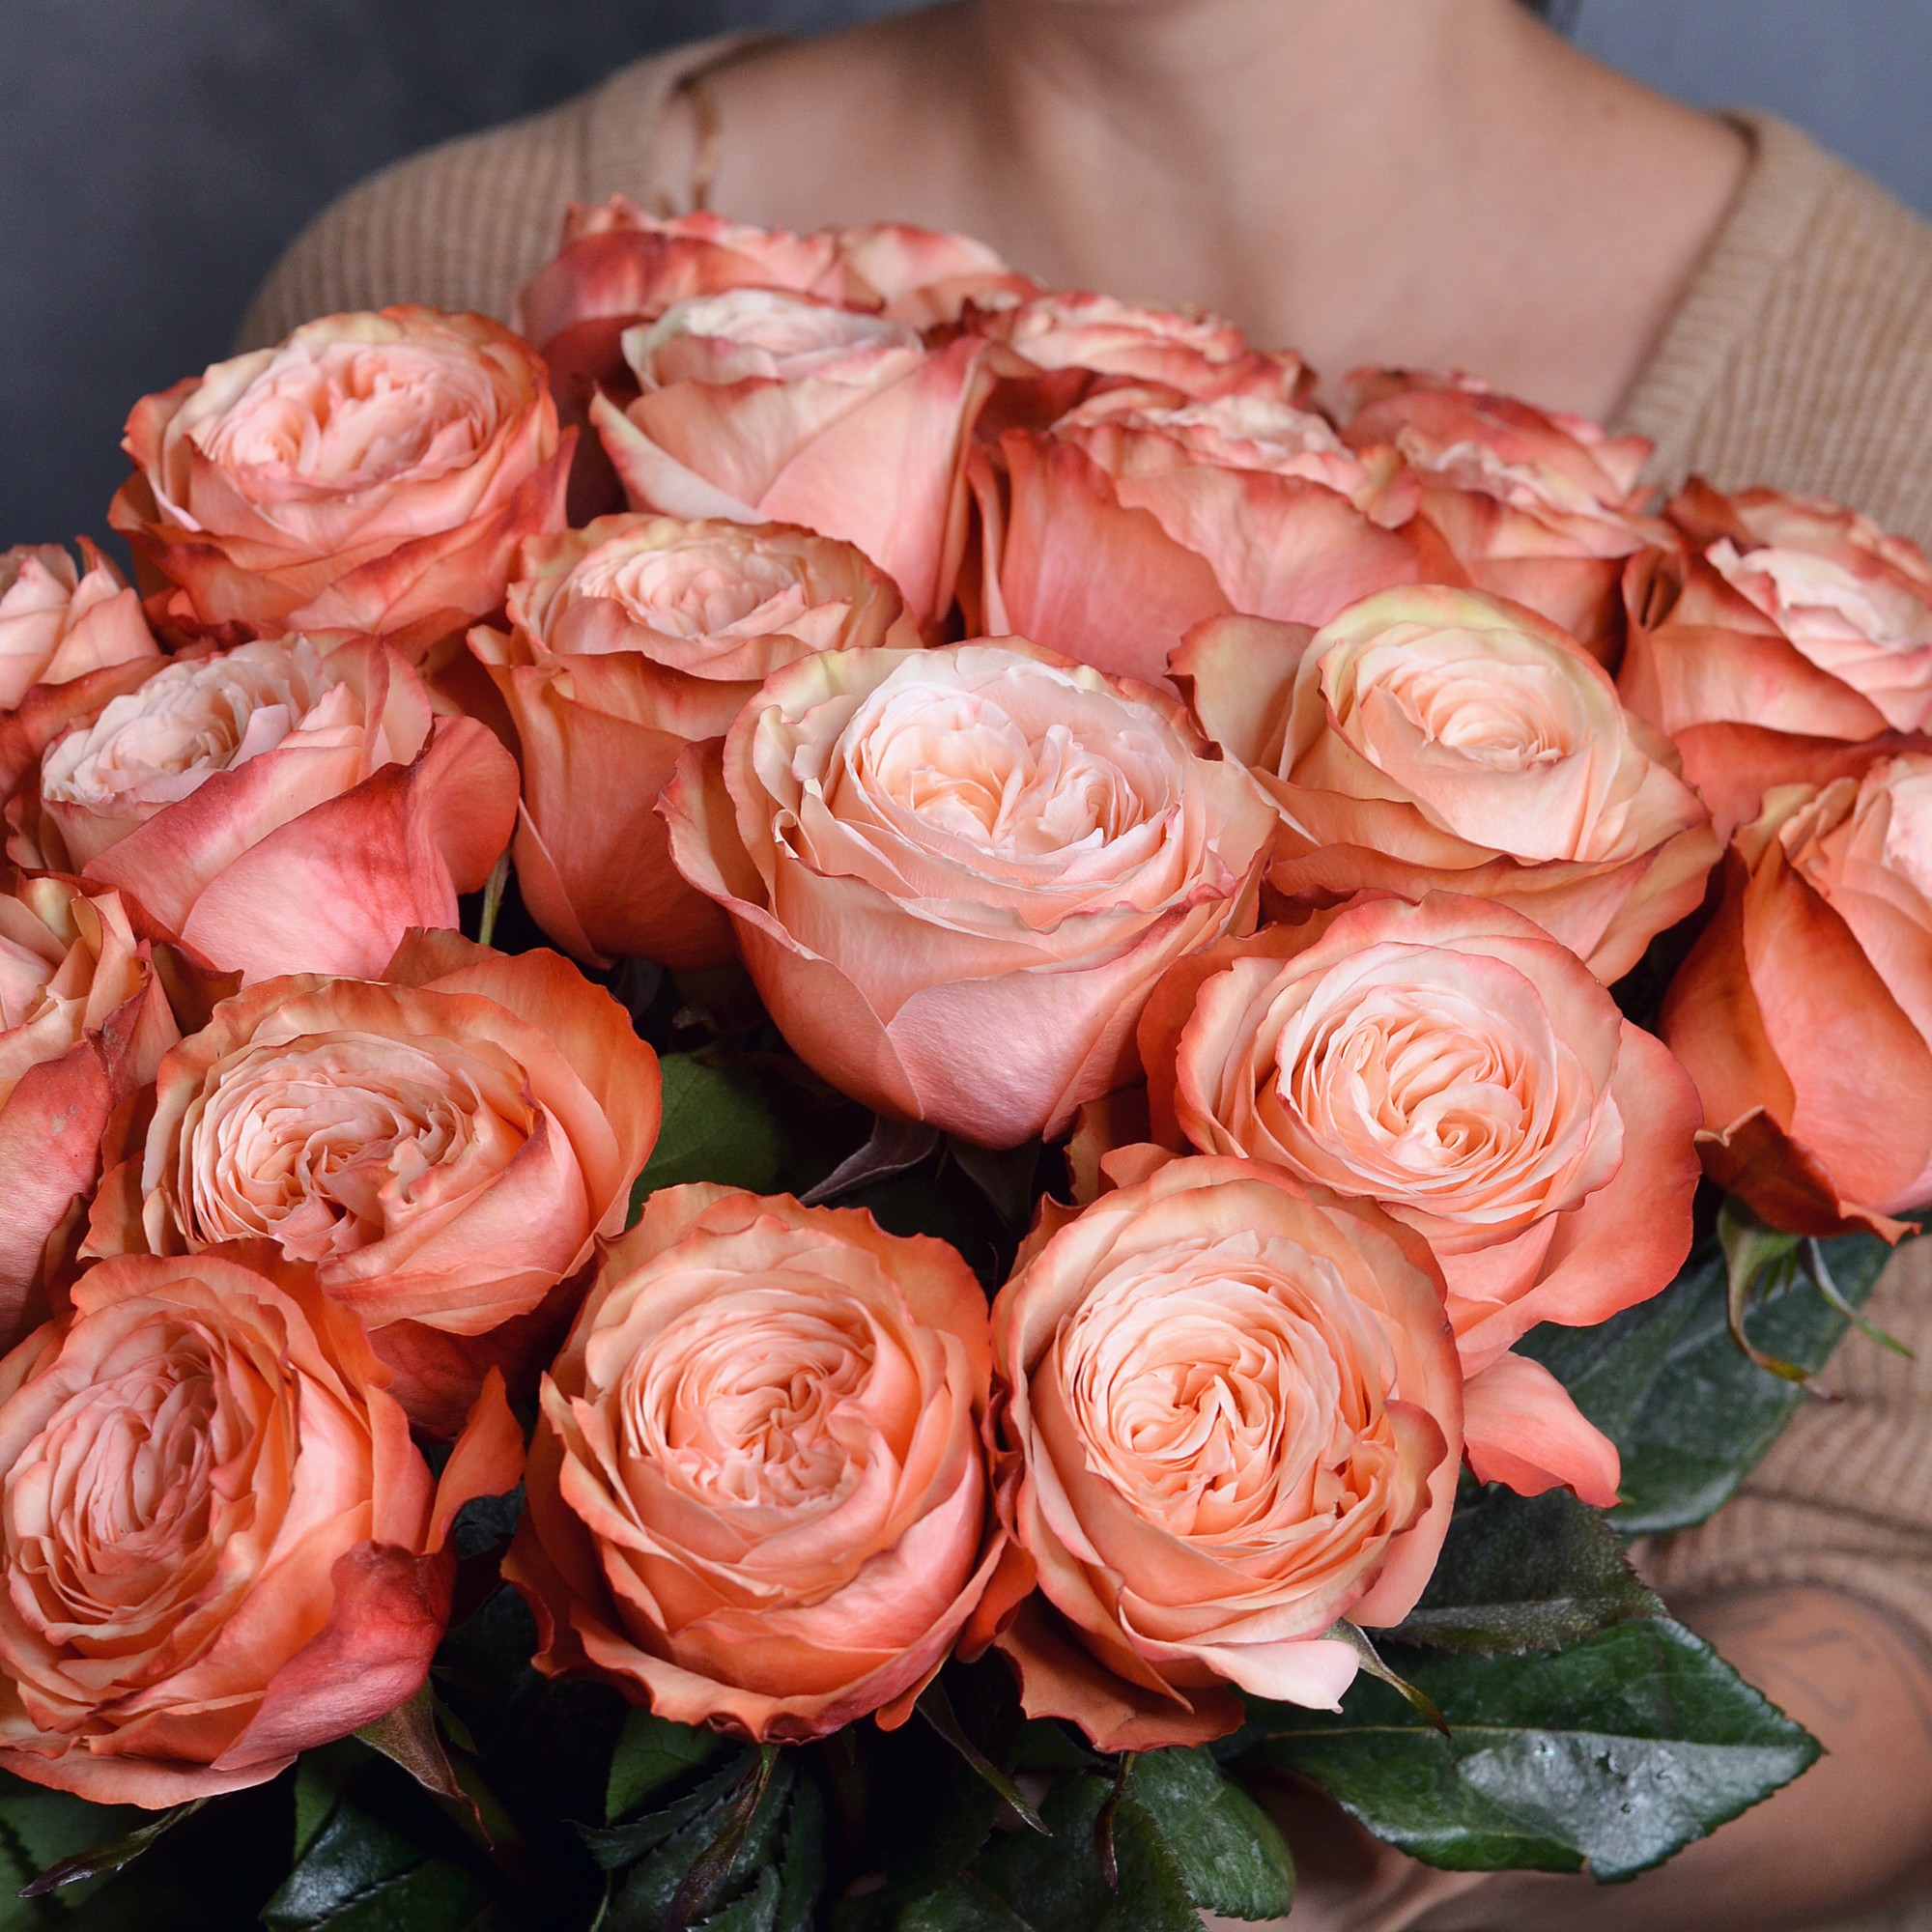 Кахала роза - описание сорта, ее характеристики, правила посадки и ухода  | розоцвет